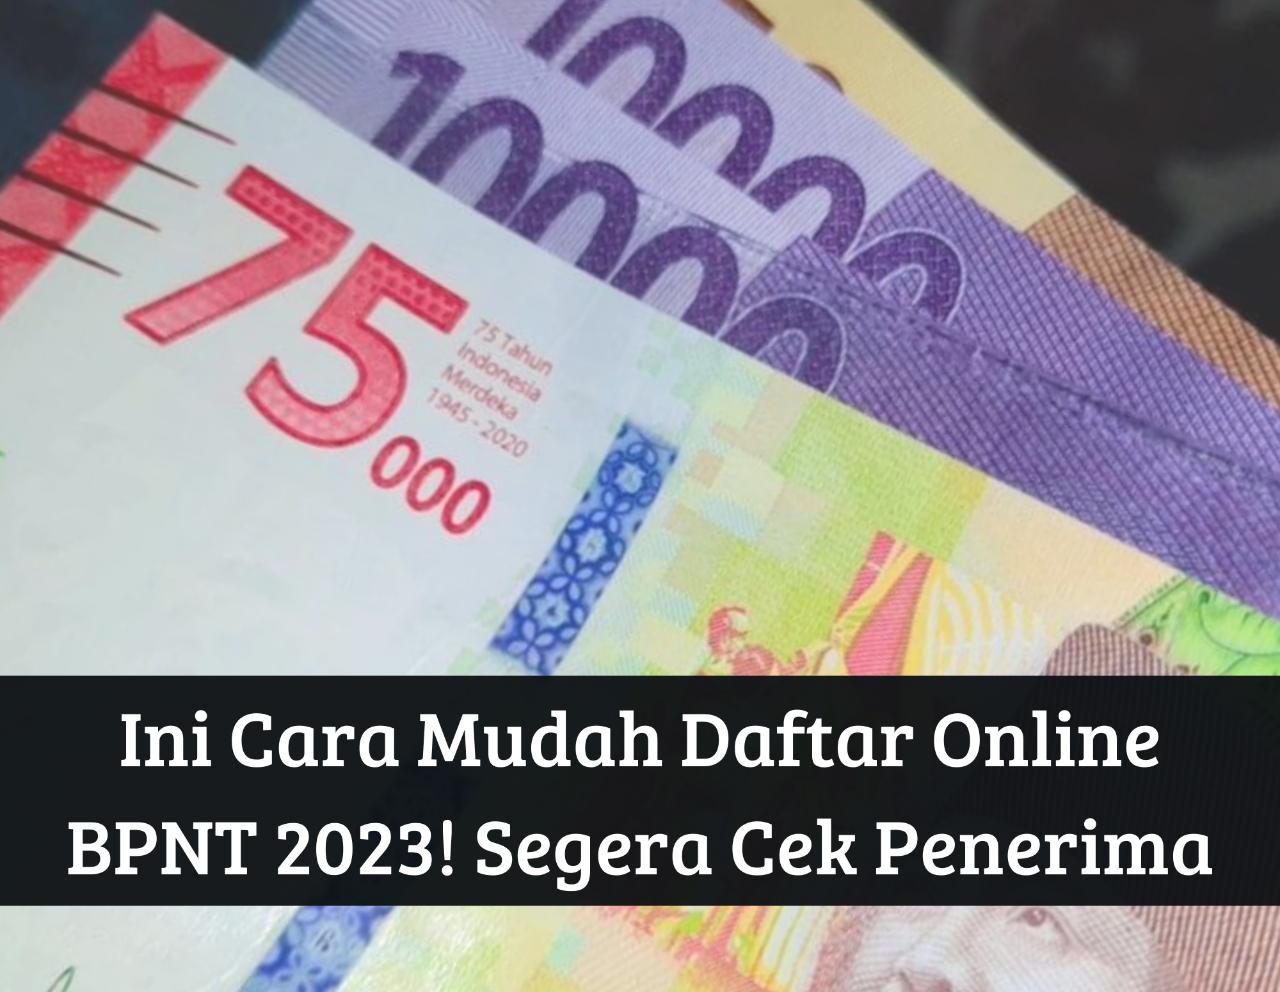 Awal September Cair Lagi! Ini Cara Mudah Daftar Online Bansos BPNT 2023, Cek Penerima Dapat Bantuan Rp400.000